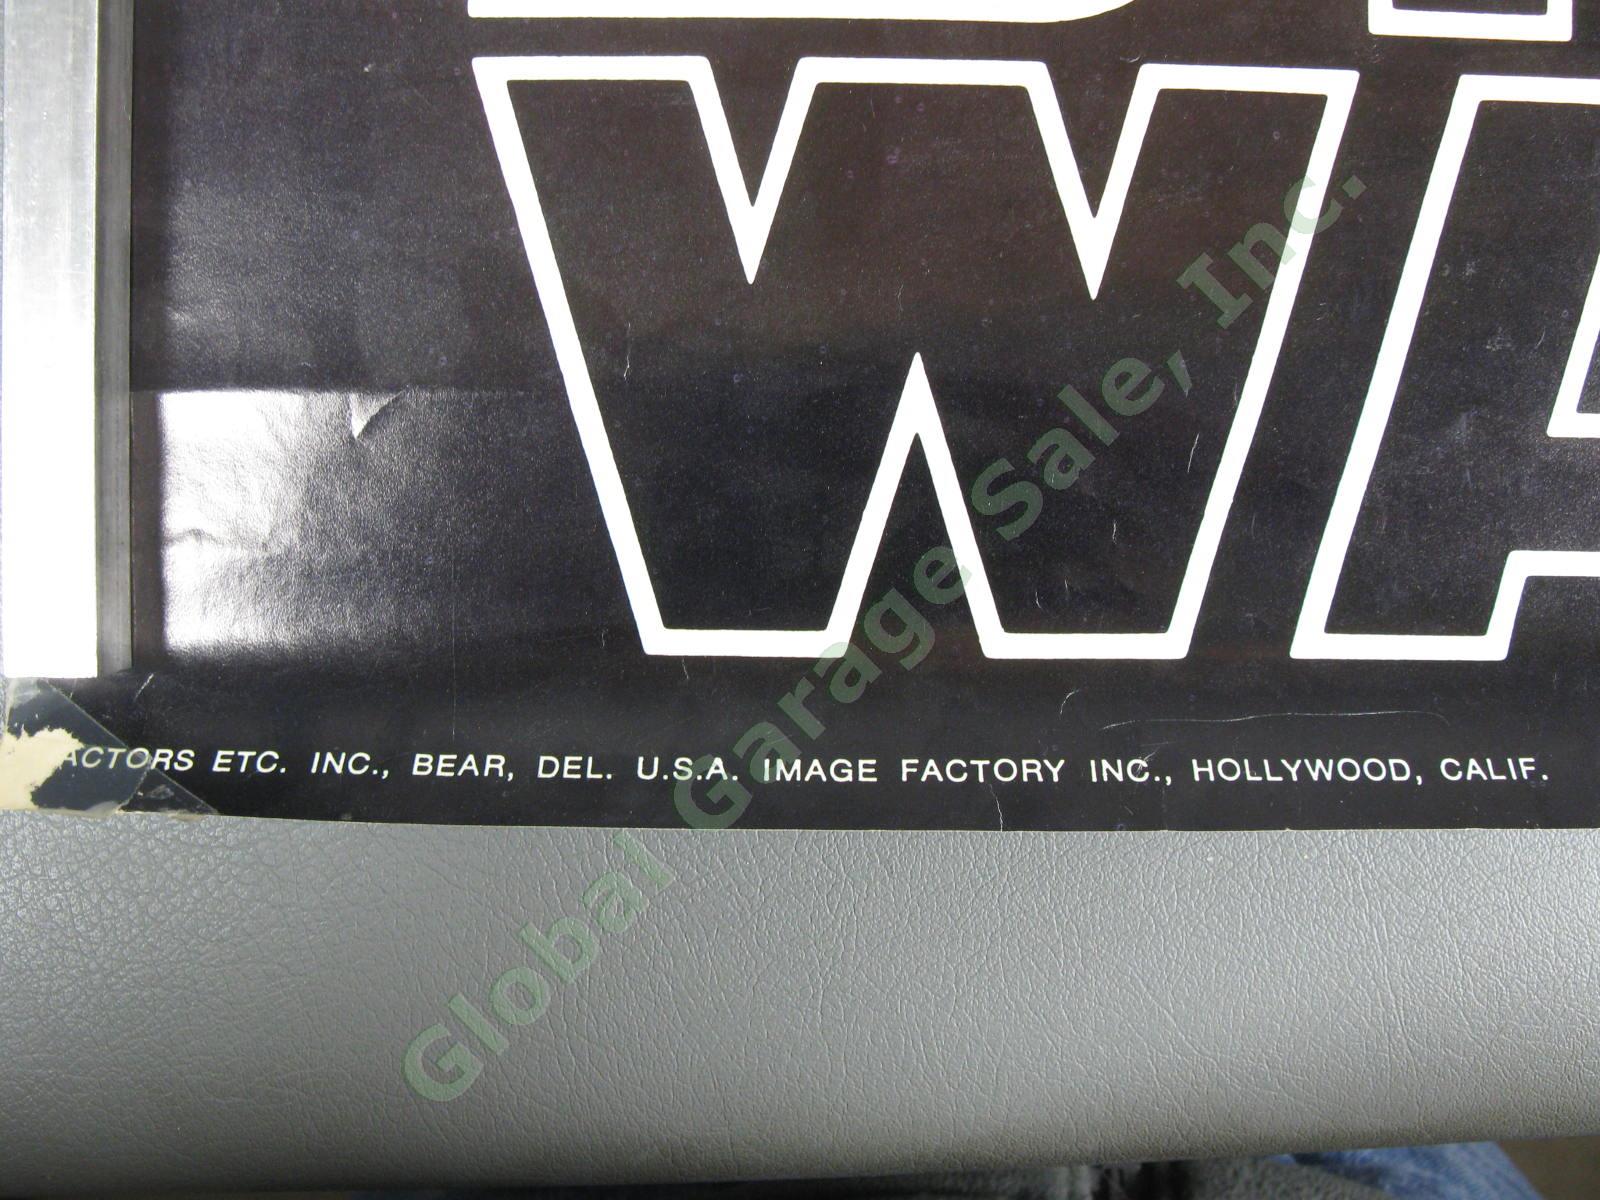 ORIGINAL 1977 Star Wars New Hope Hildebrandt 20th Century Fox Film Poster 28x20" 5